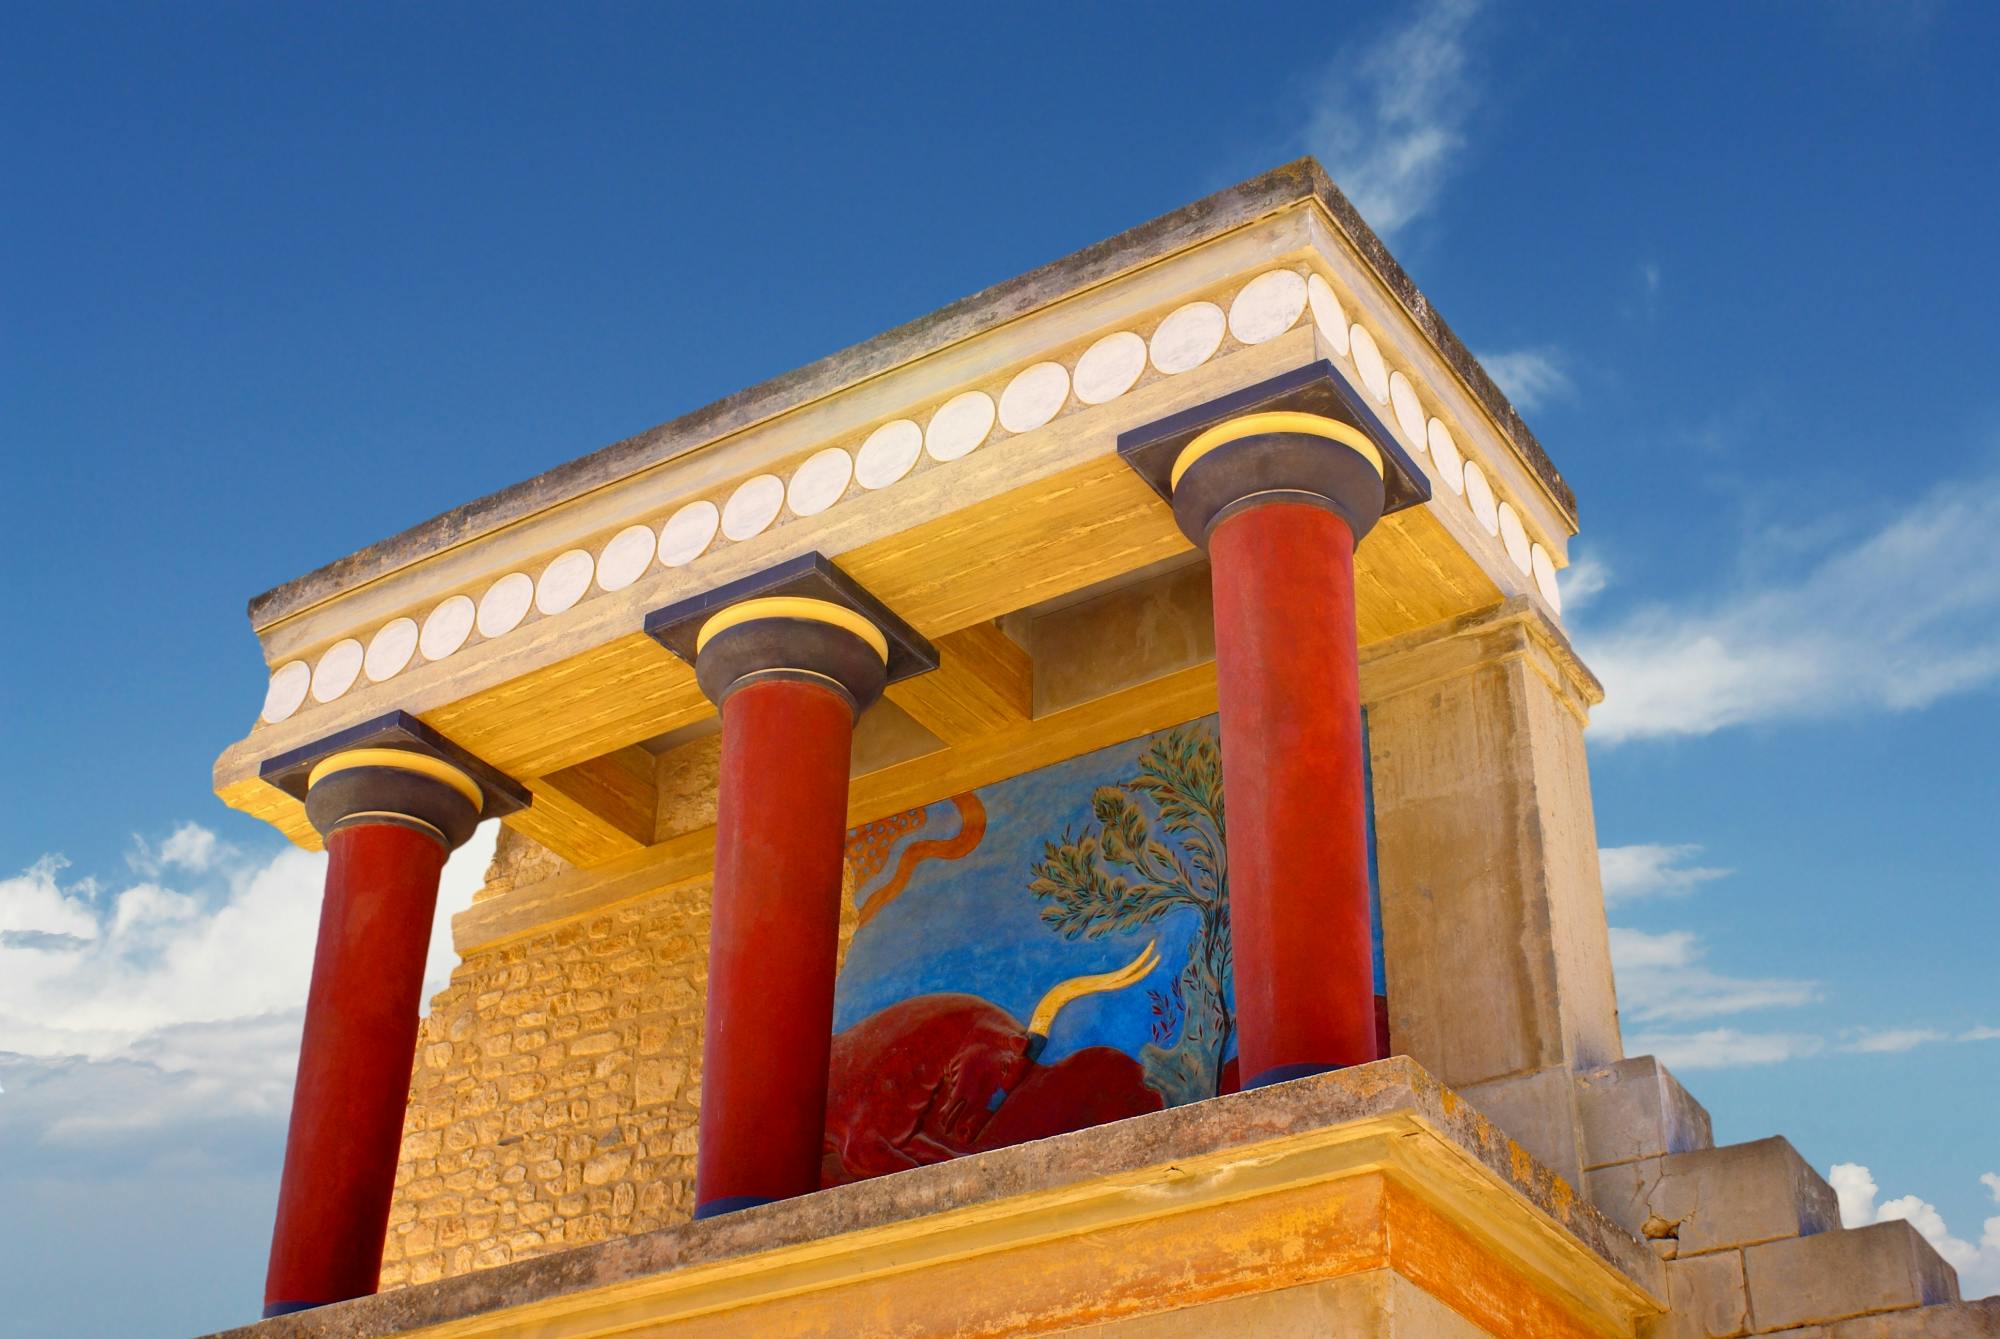 Bilety wstępu do stanowiska archeologicznego Knossos